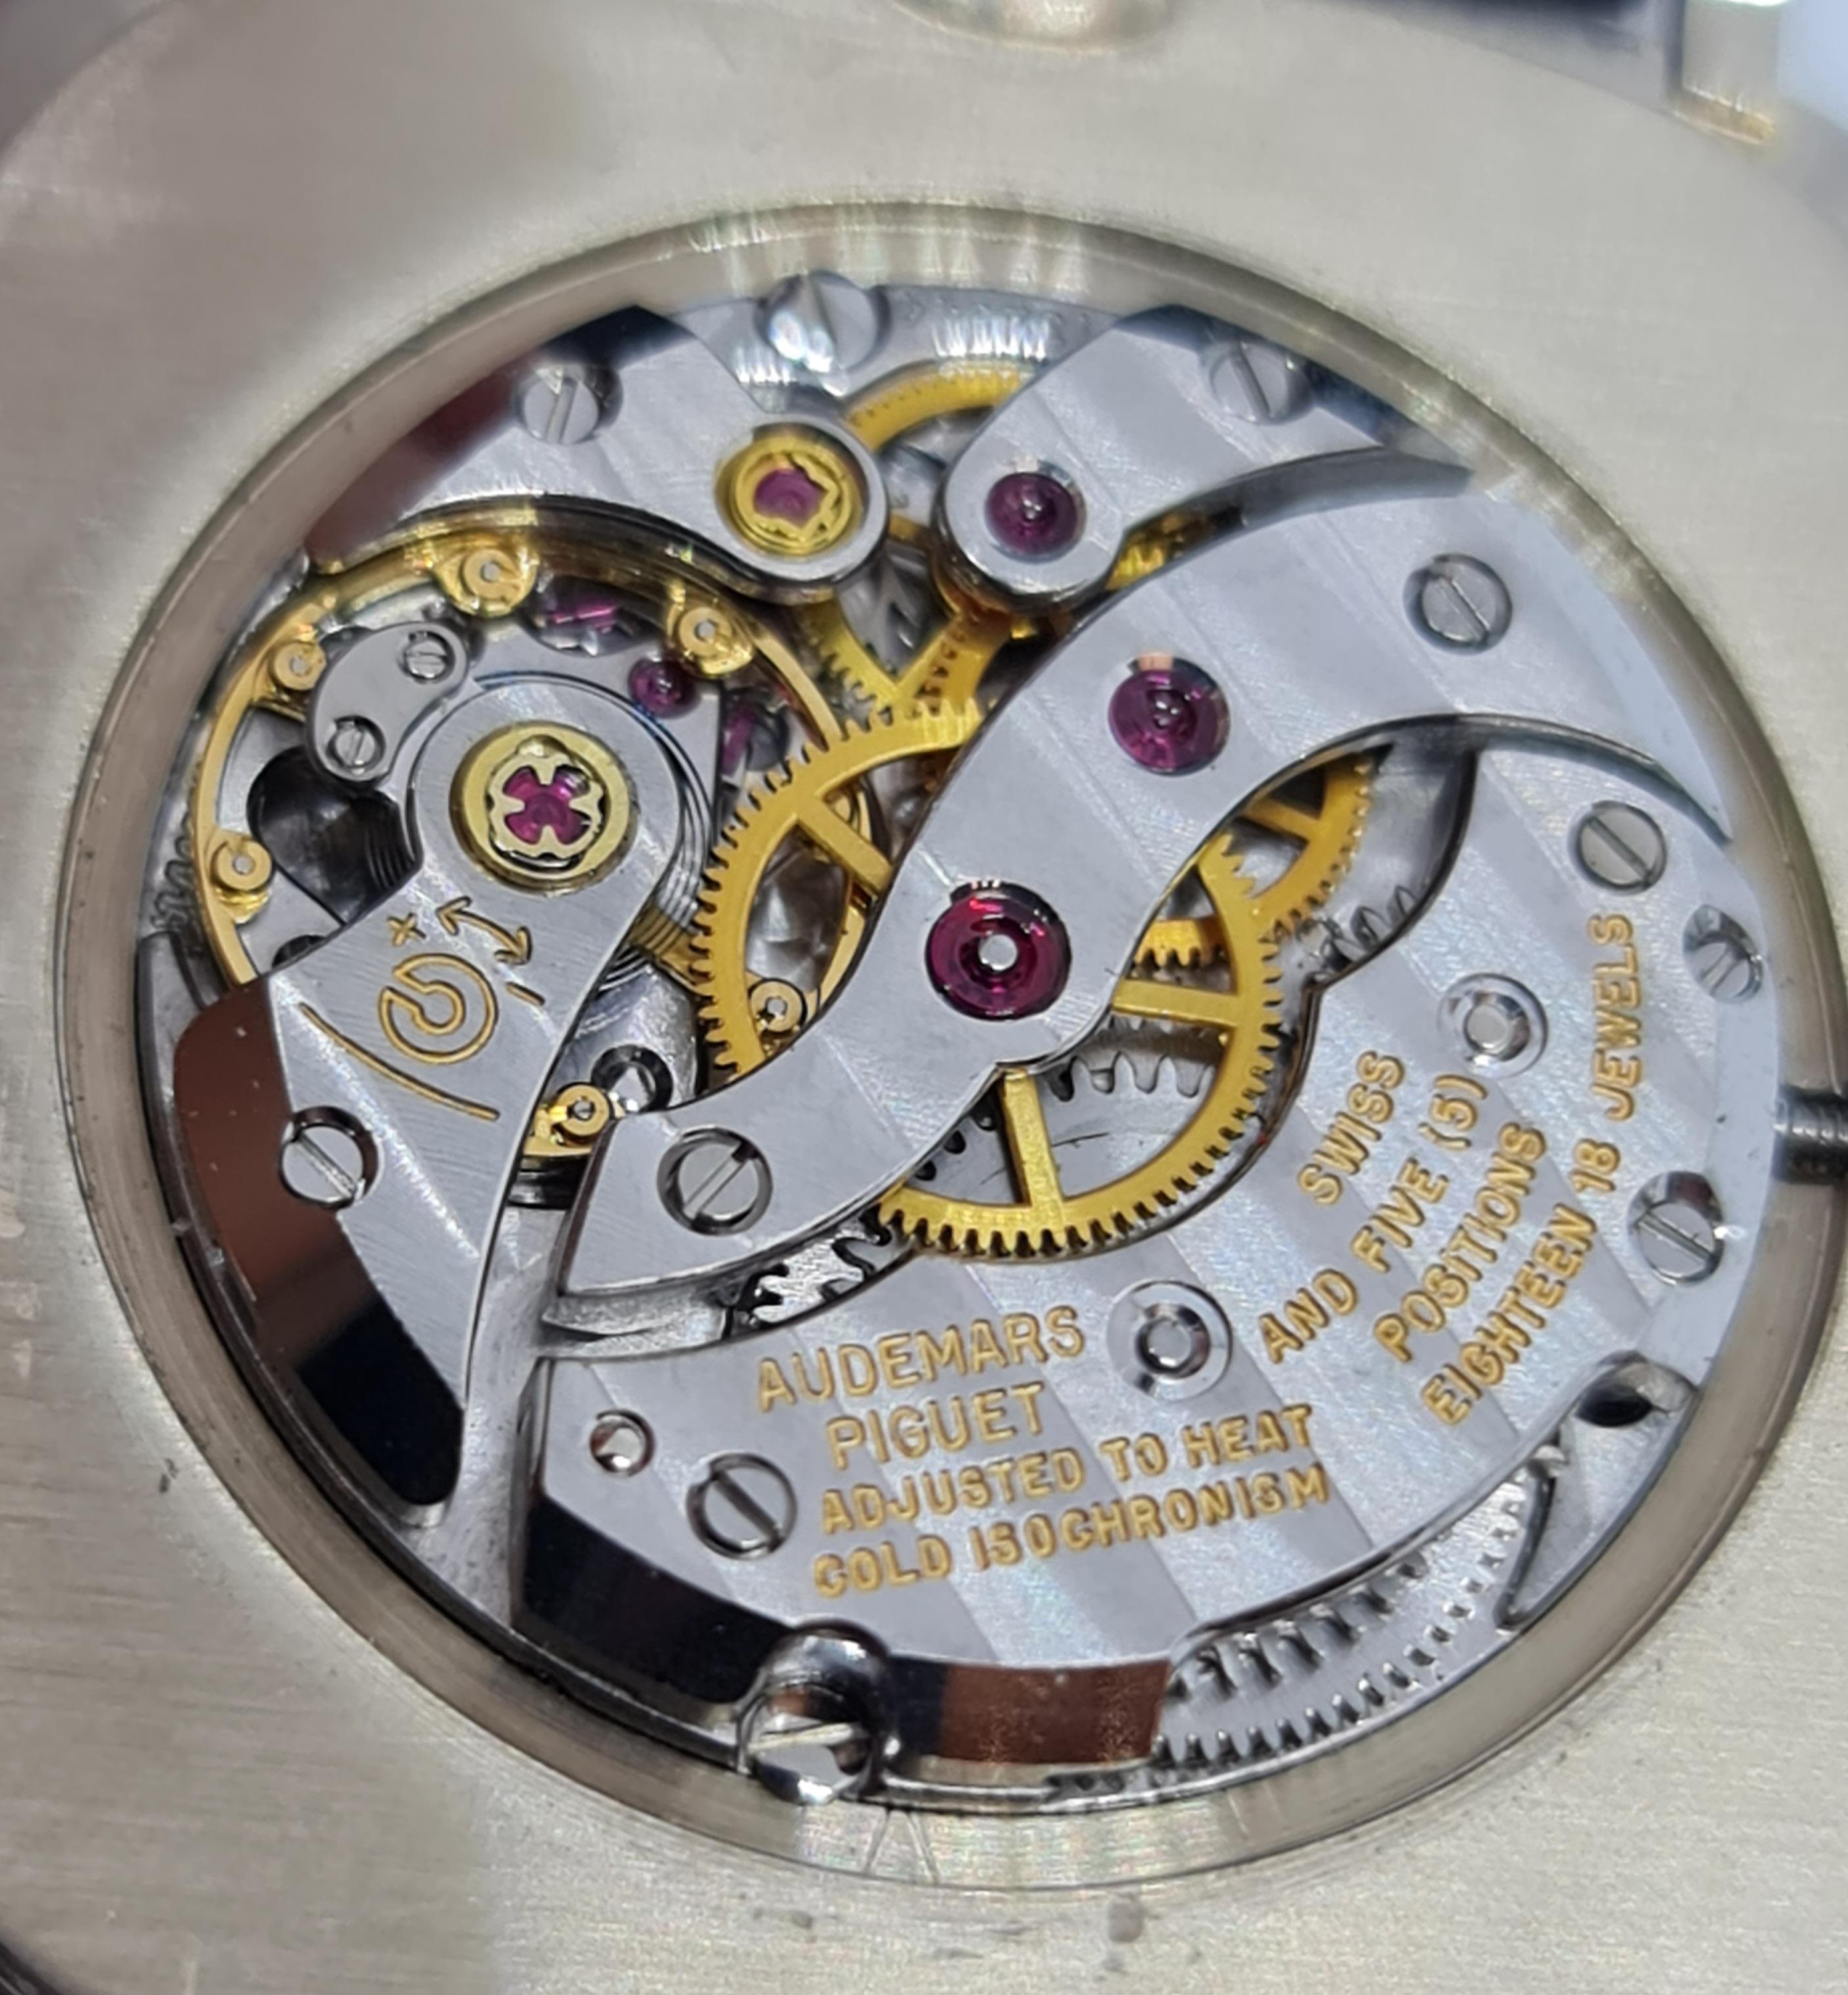 ap oval watch